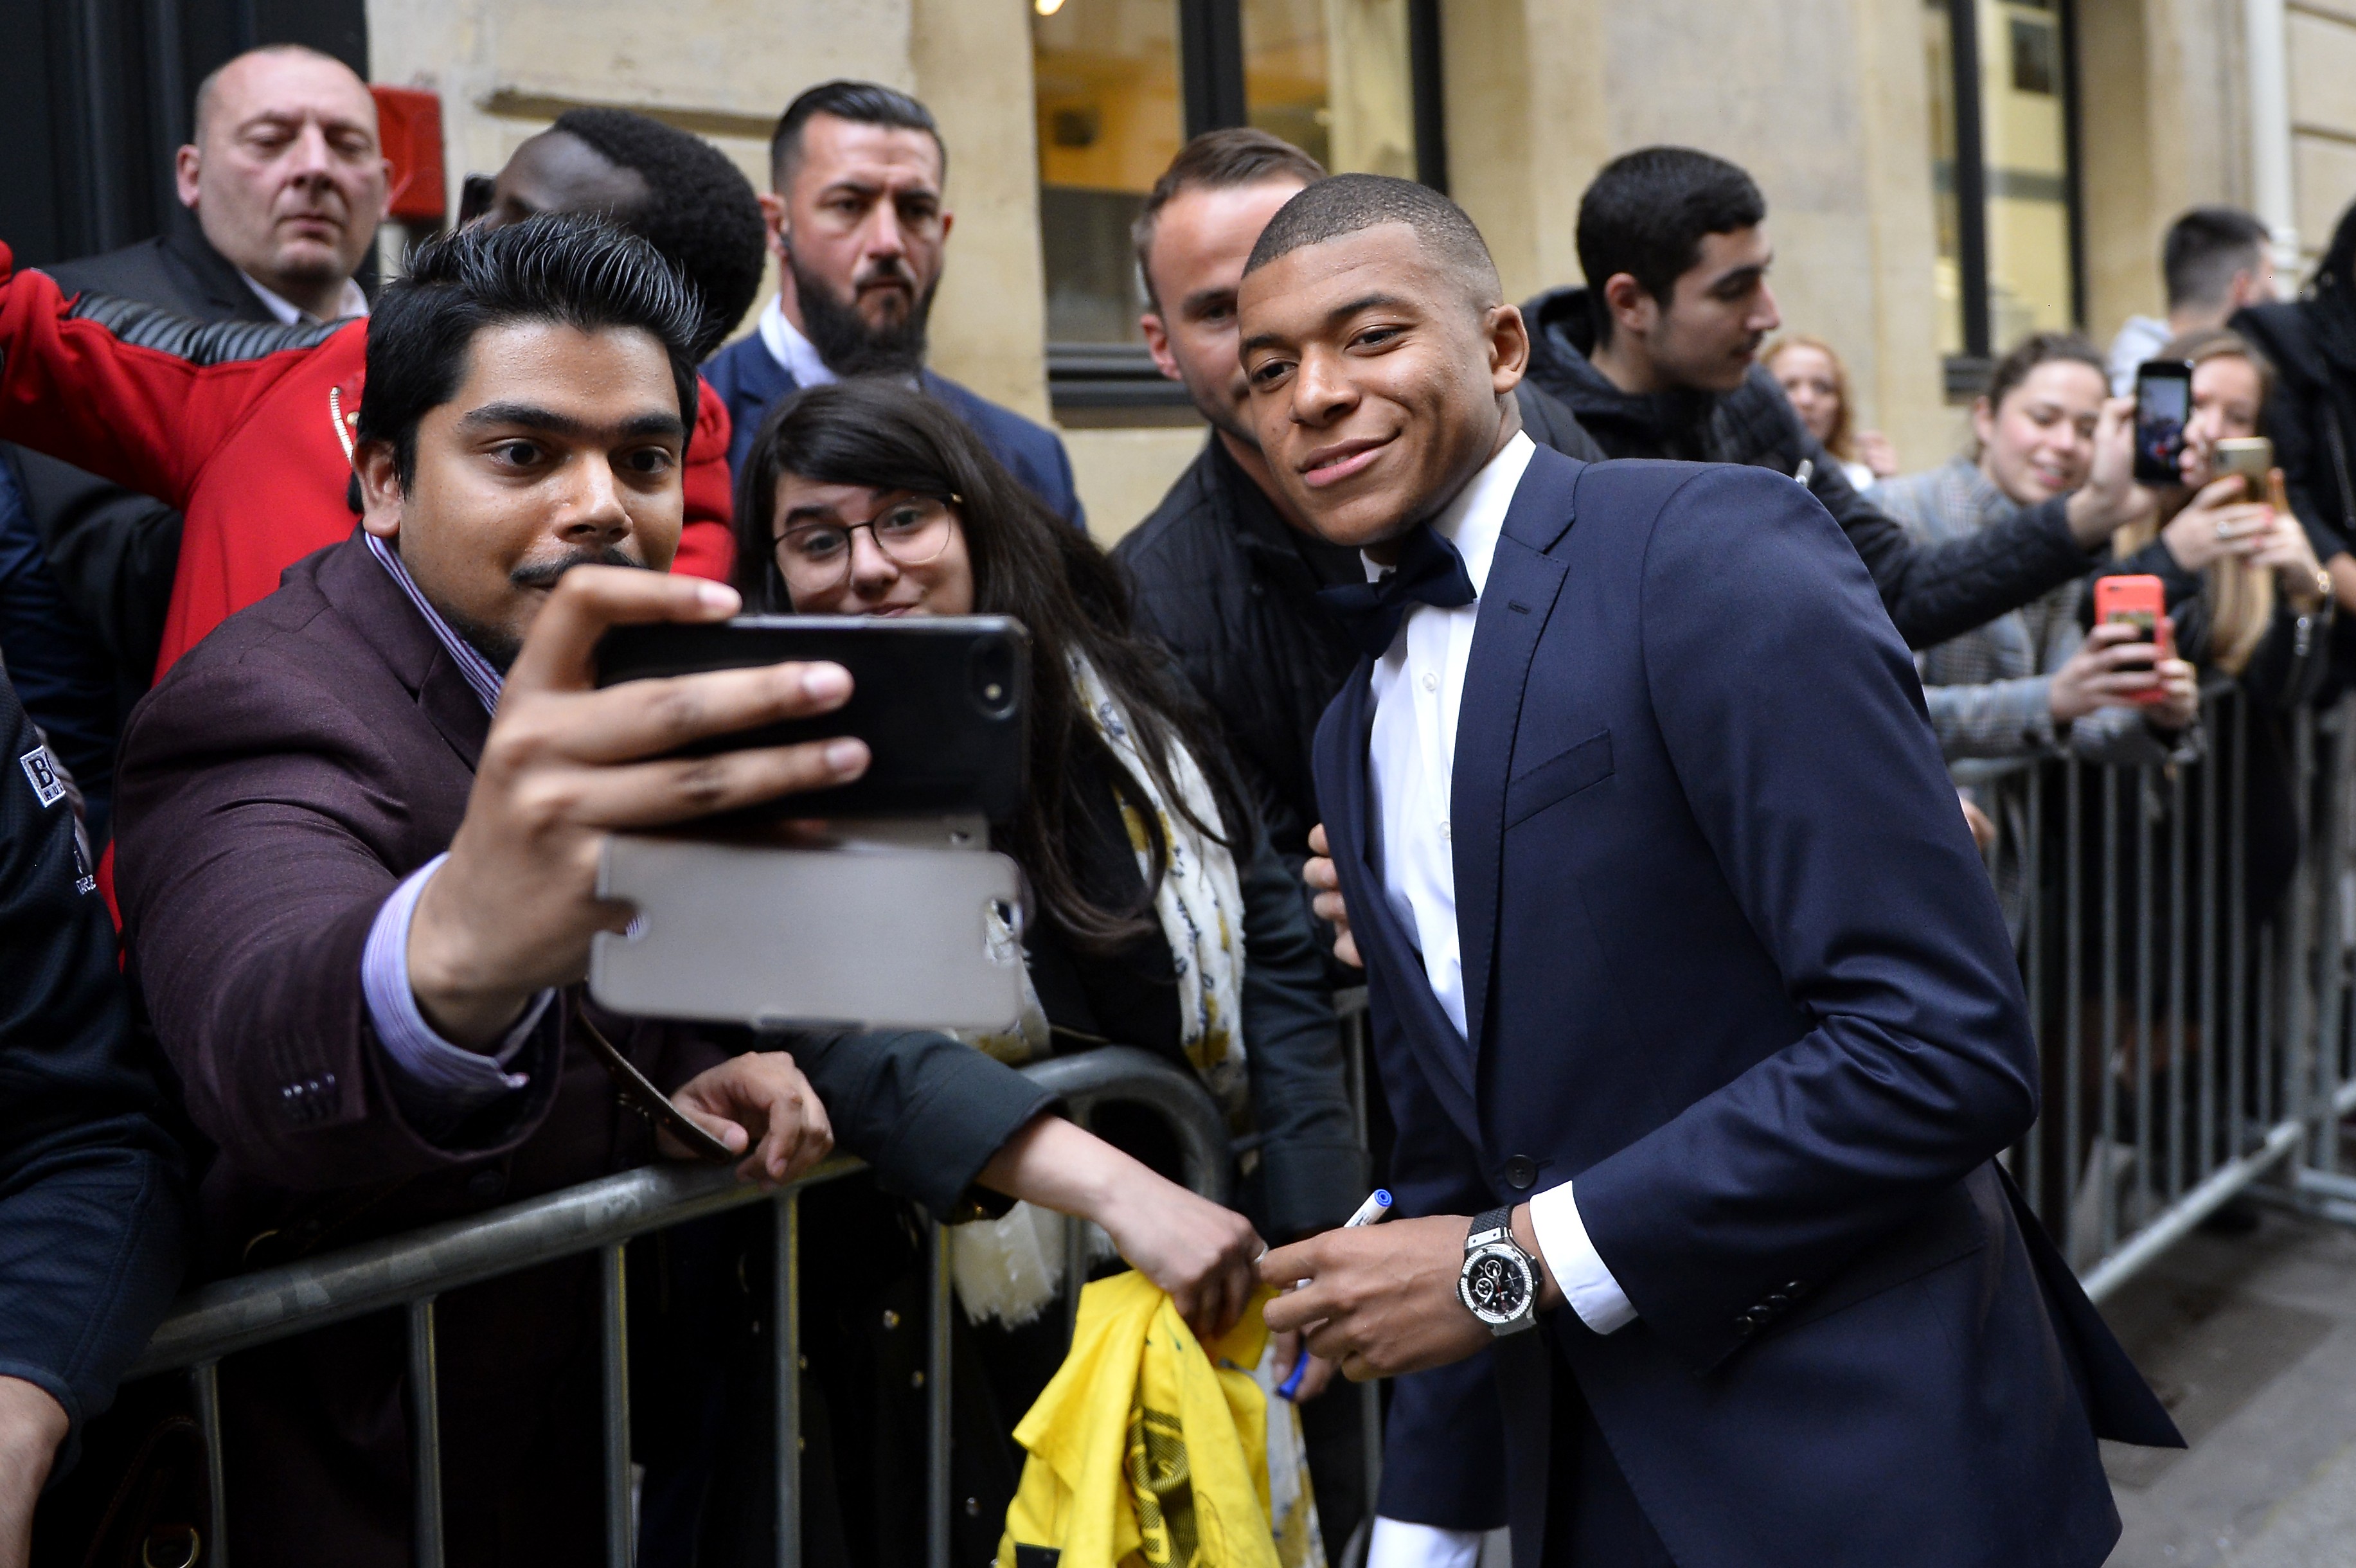 Kylian Mbappé é tietado ao chegar ao evento (Foto: Getty Images)